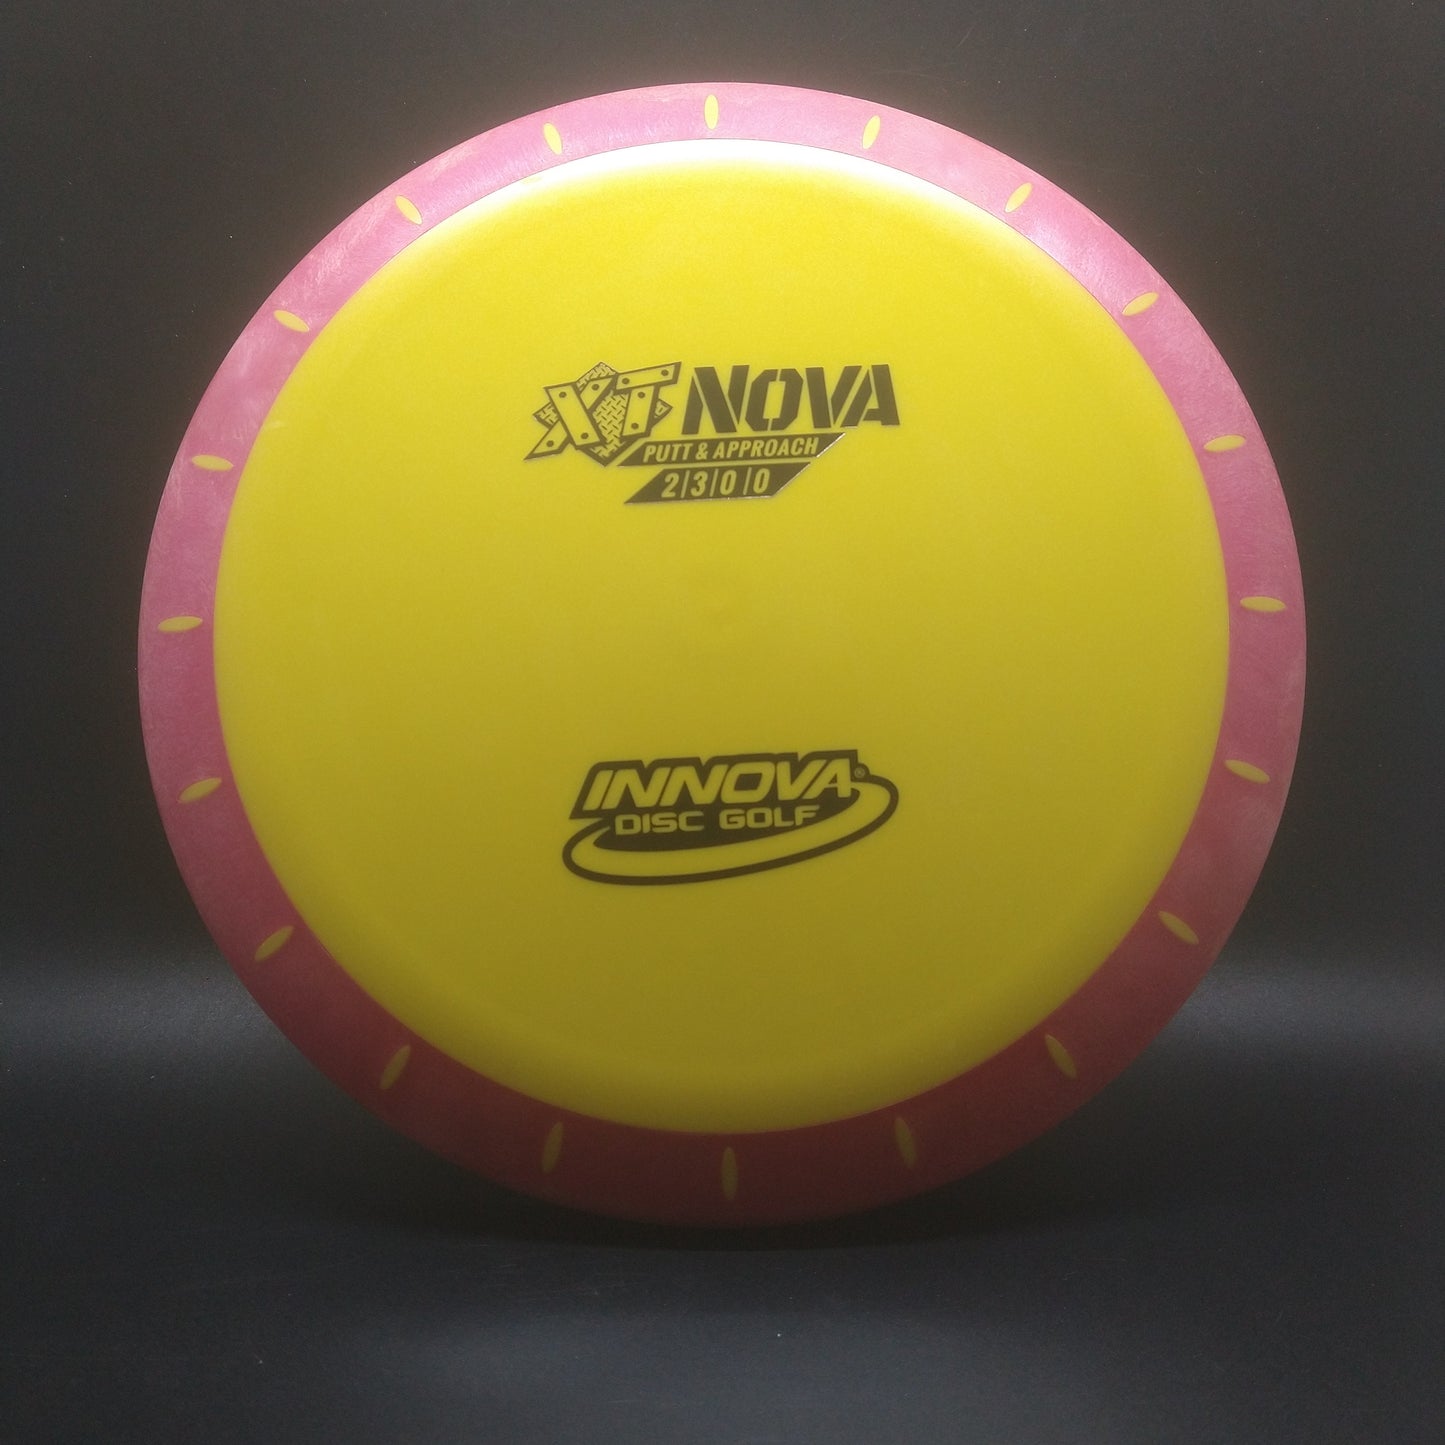 Innova XT Nova Yellow 175g